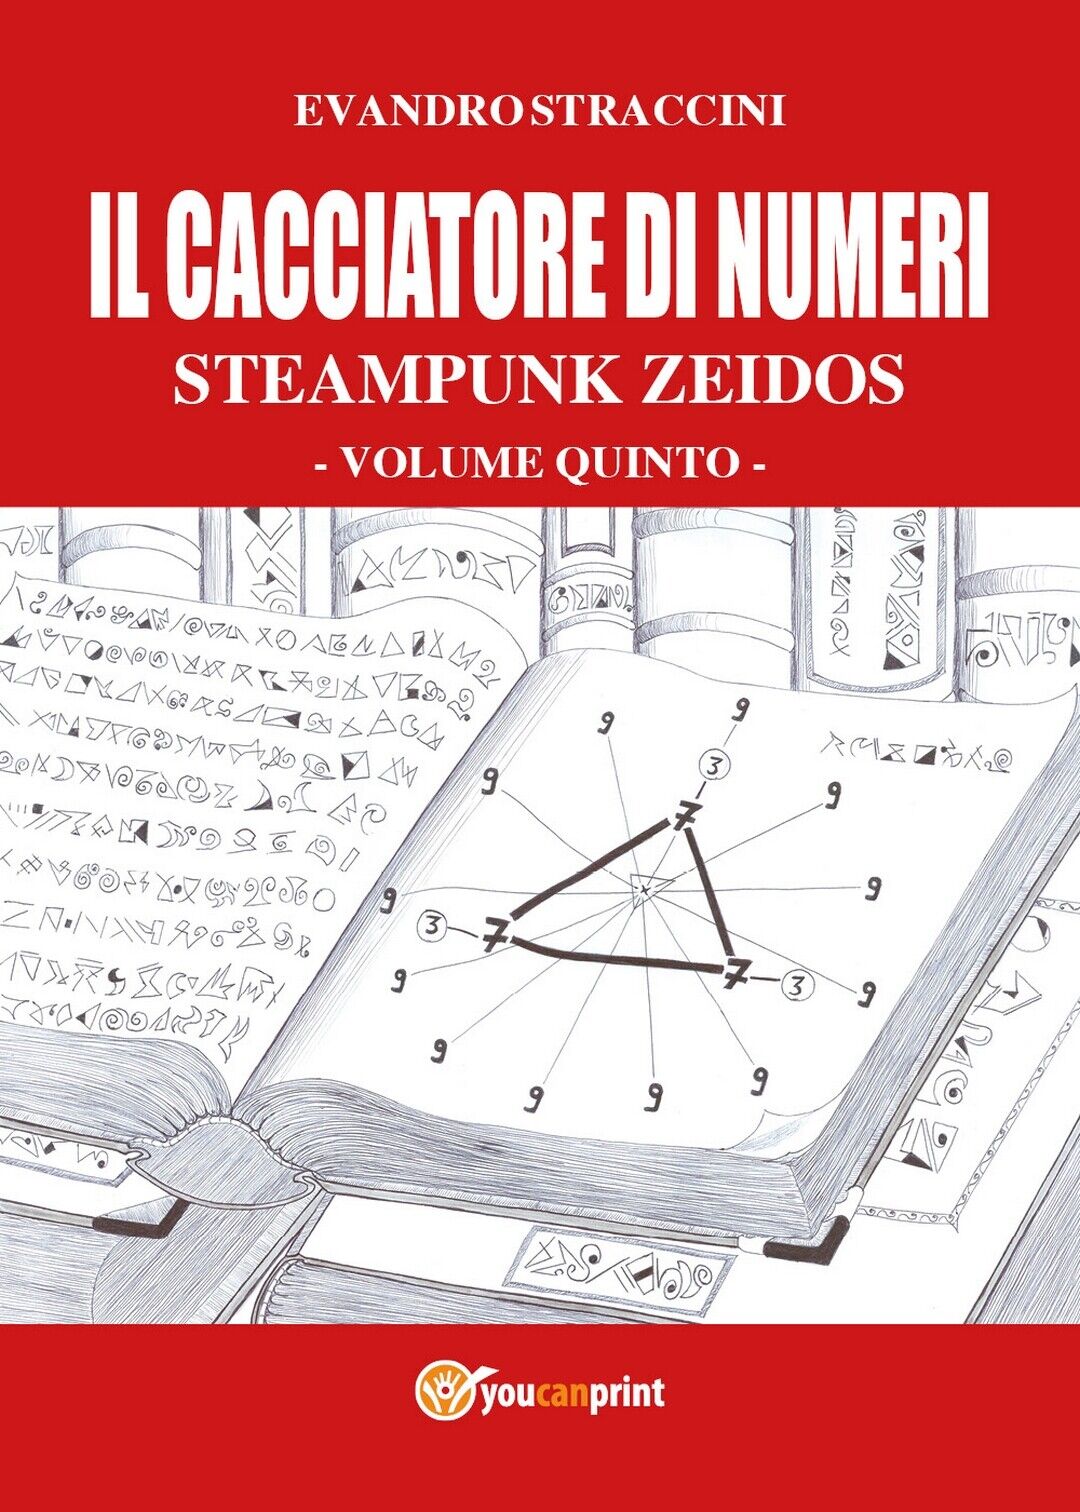 Il Cacciatore di Numeri - Steampunk Zeidos volume quinto  di Evandro Straccini libro usato